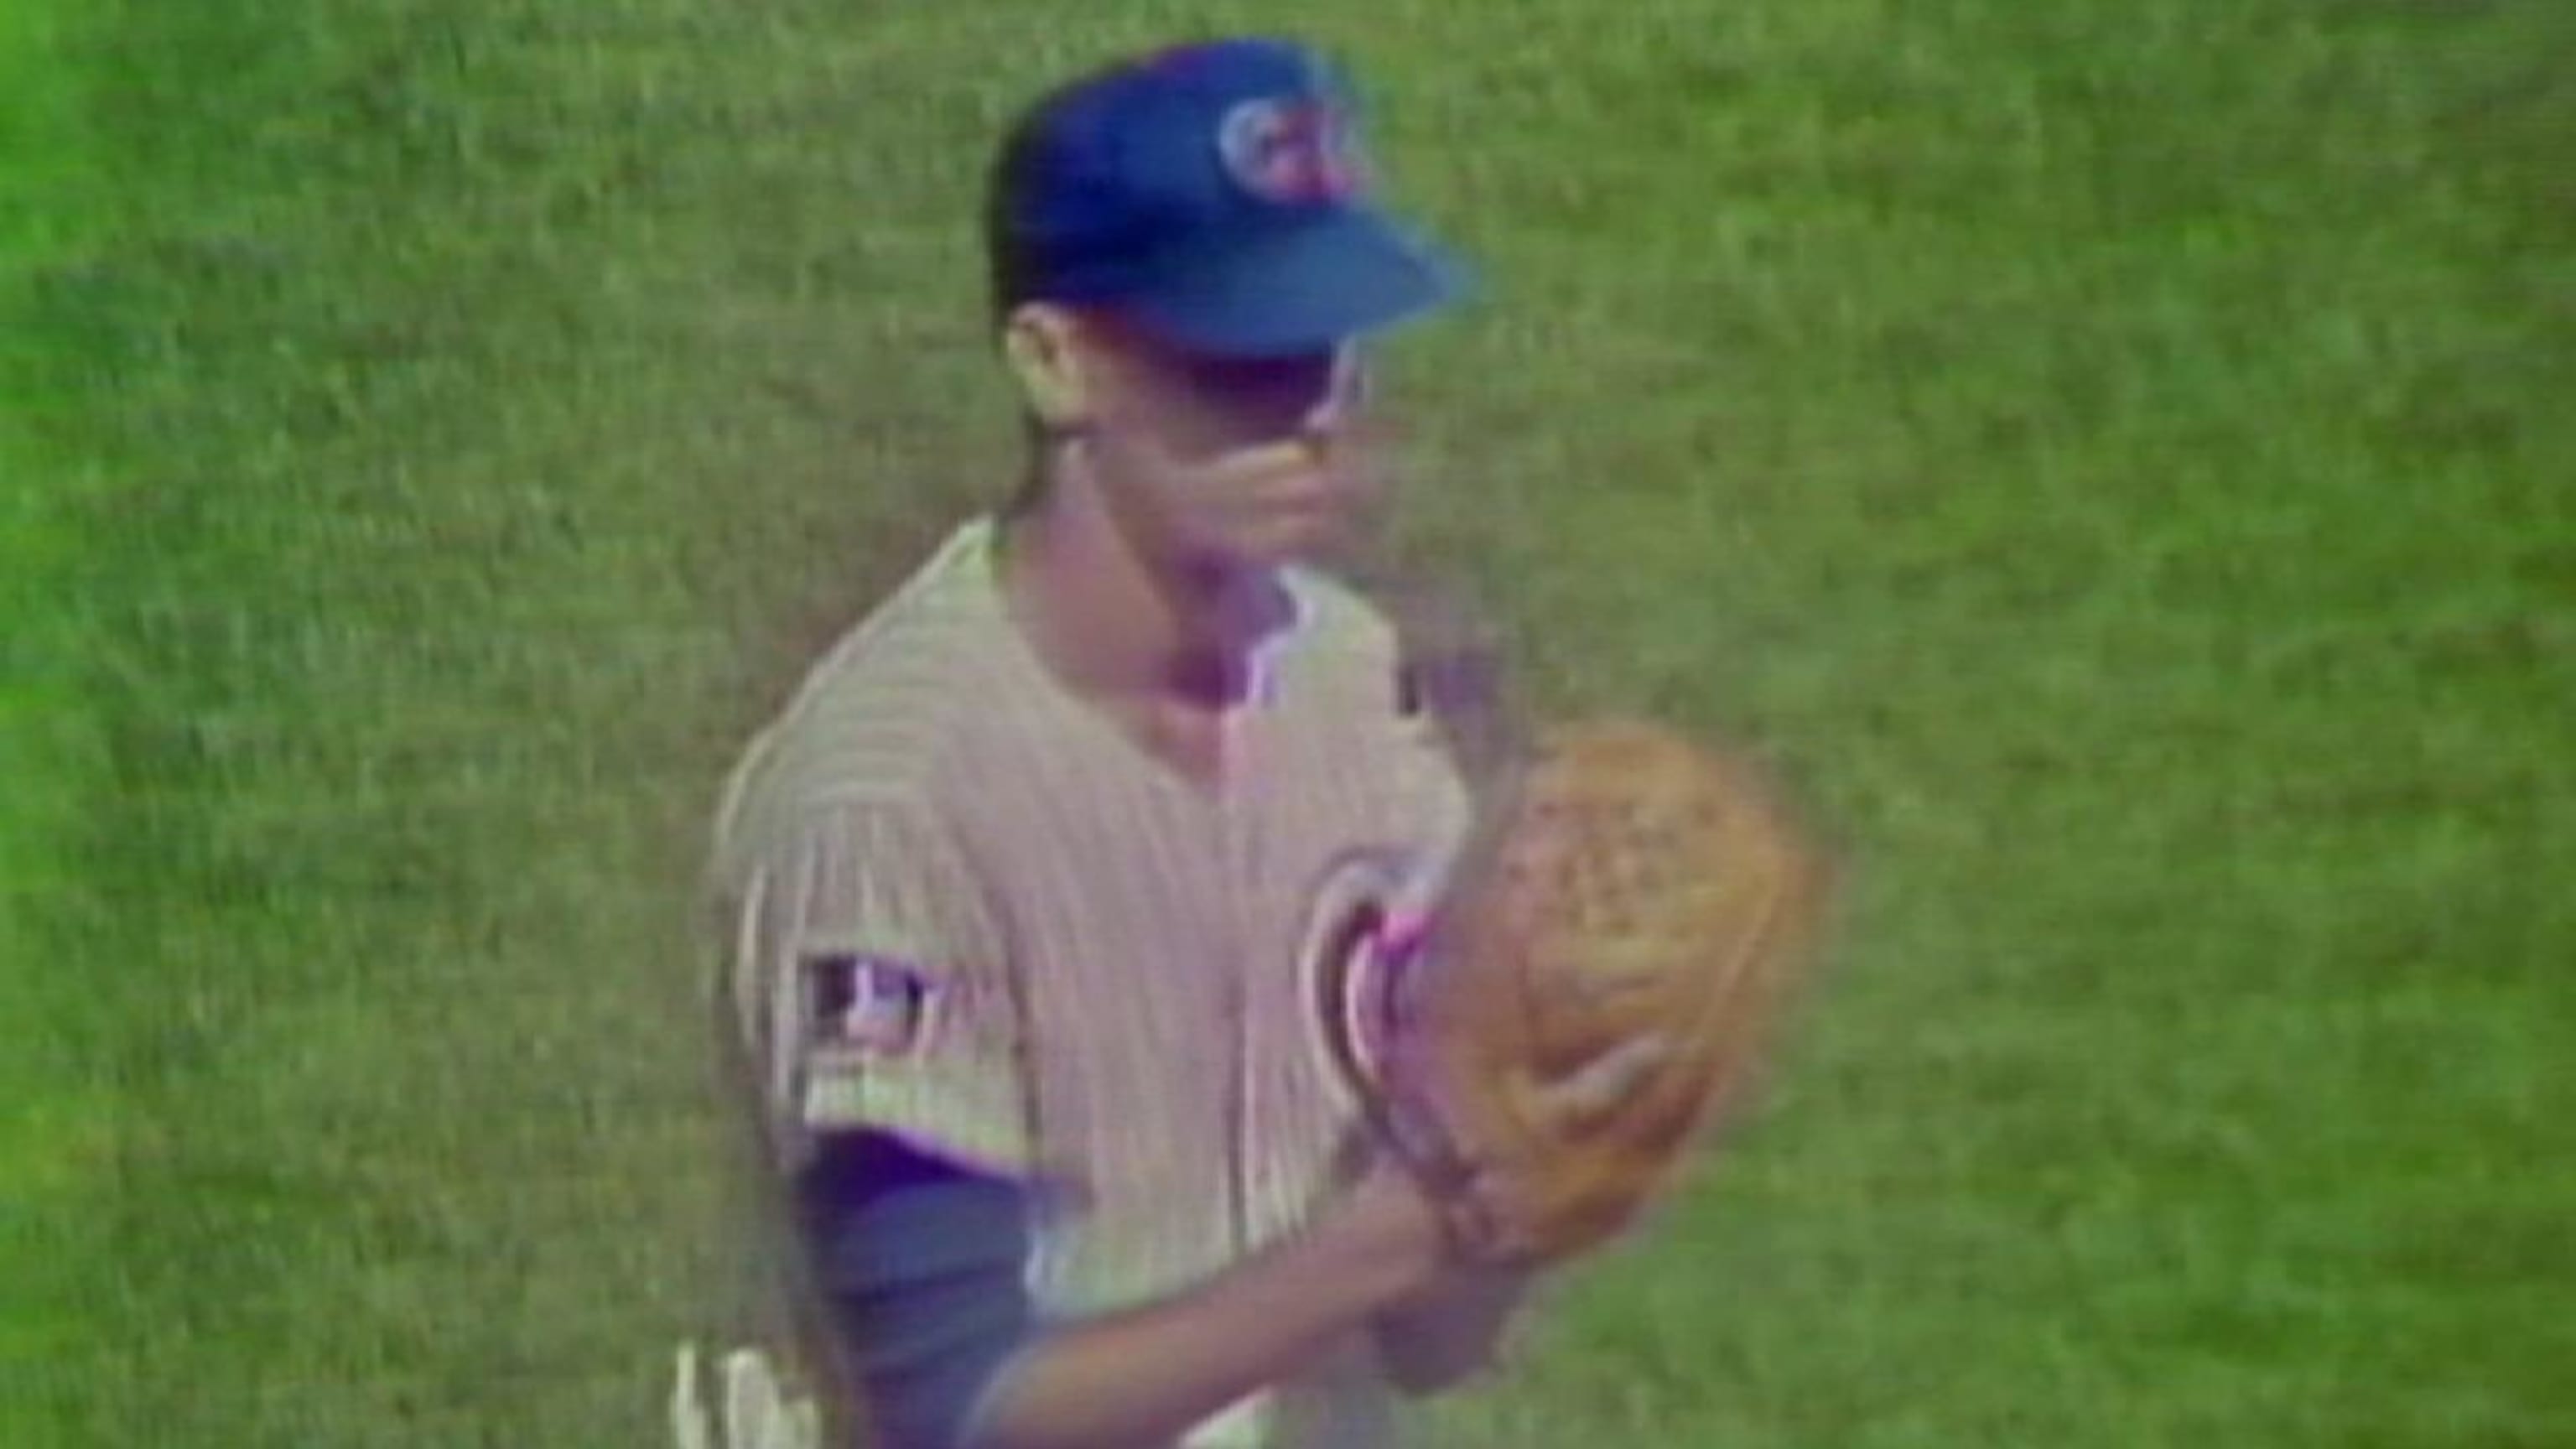 Cubs Legend Ryne Sandberg Talks National and Missing Baseball Fans